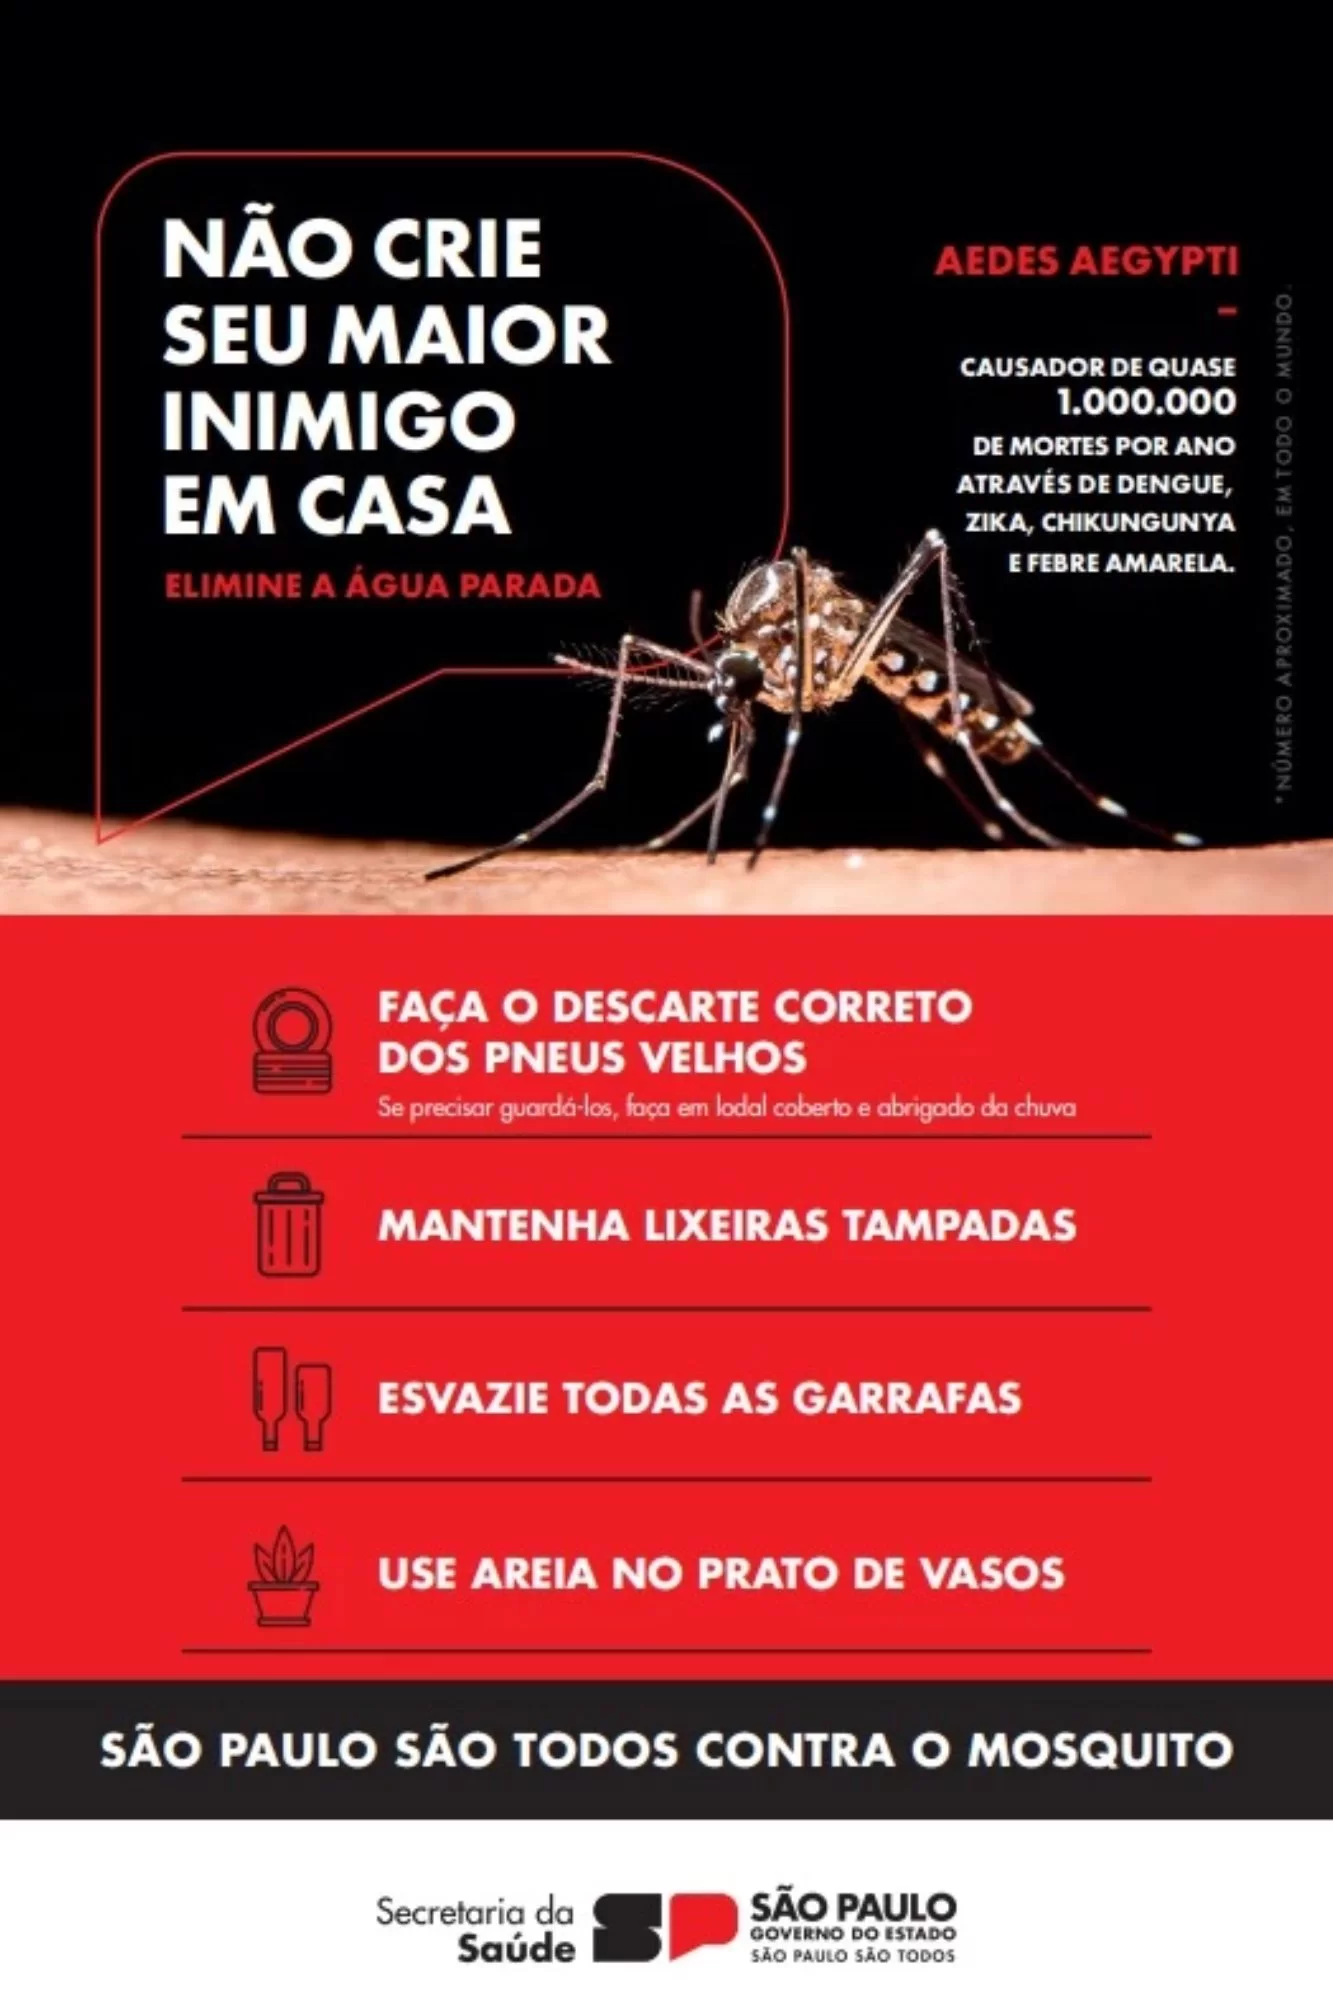 Governo de São Paulo divulga panfletos com informações de como prevenir doenças transmitidas pelo mosquito Aedes aegypti